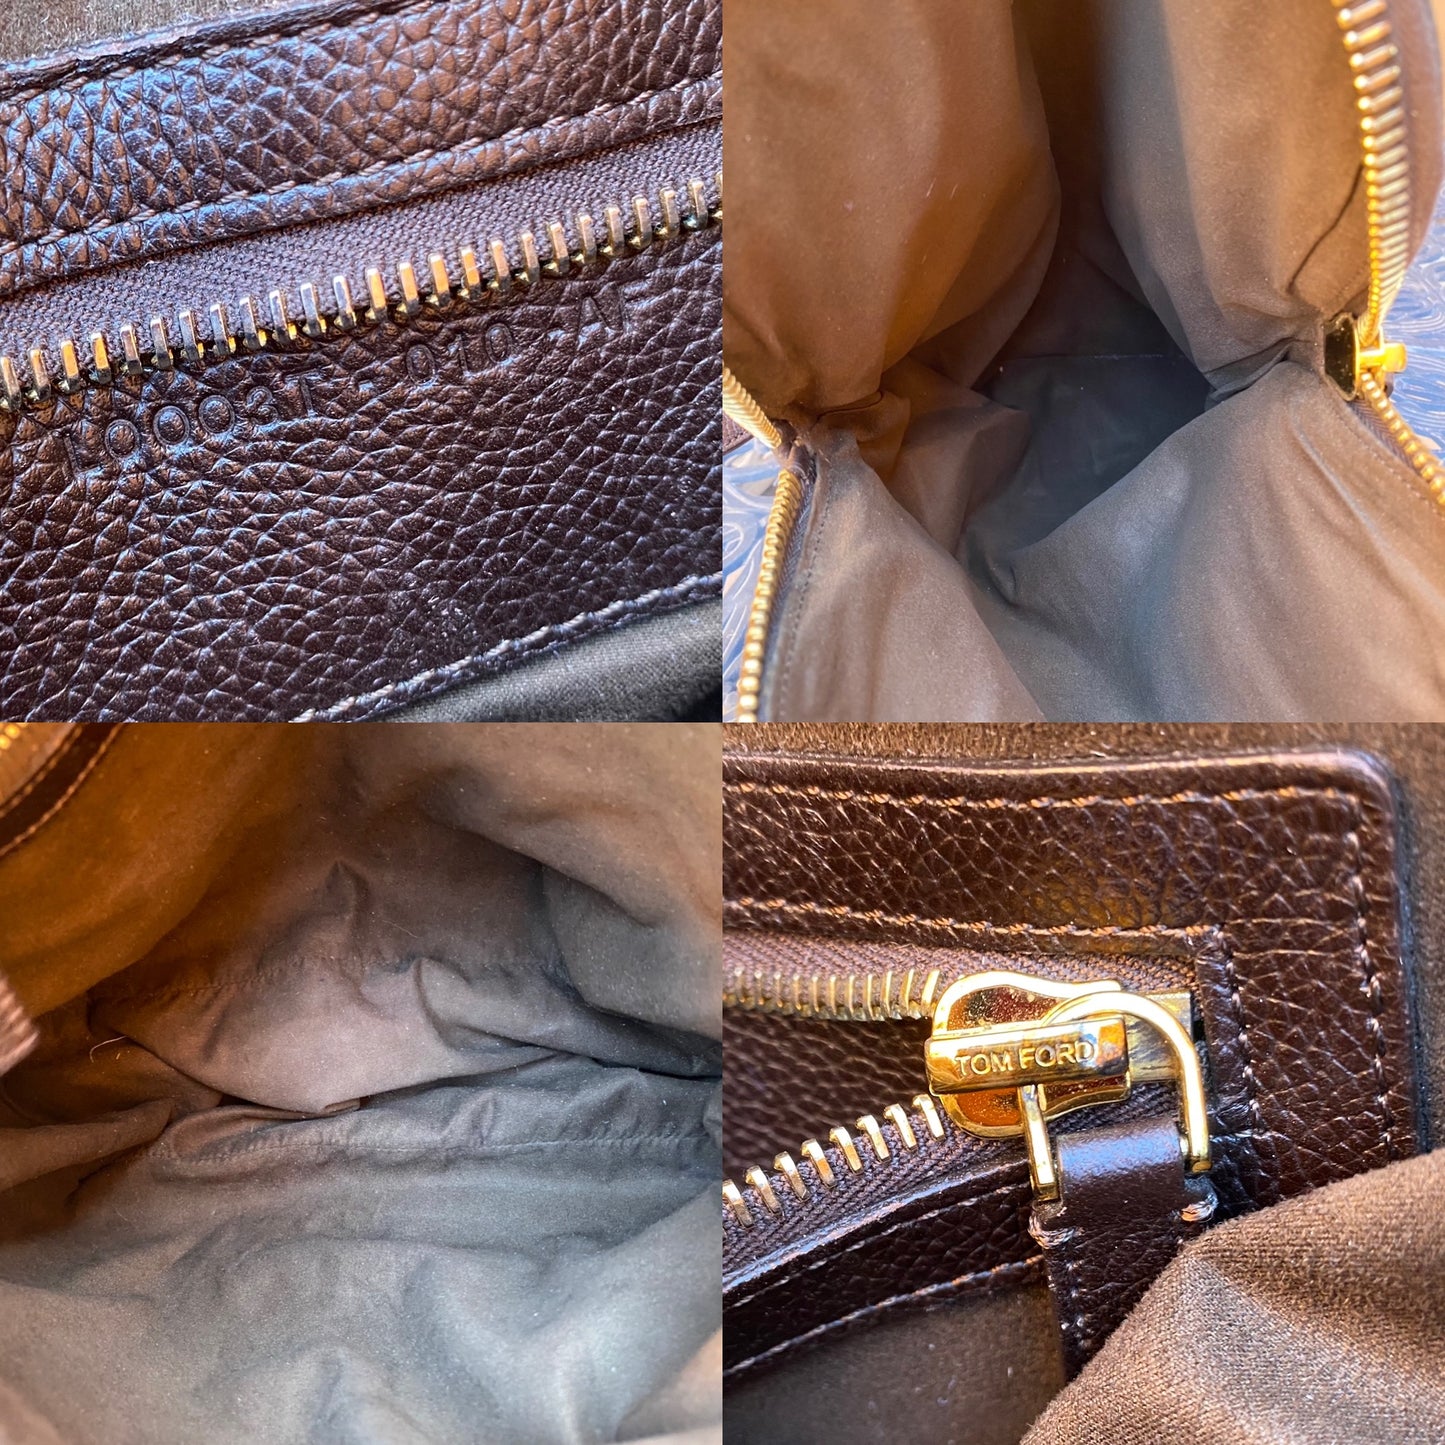 Tom Ford Leather Jennifer Shoulder Bag